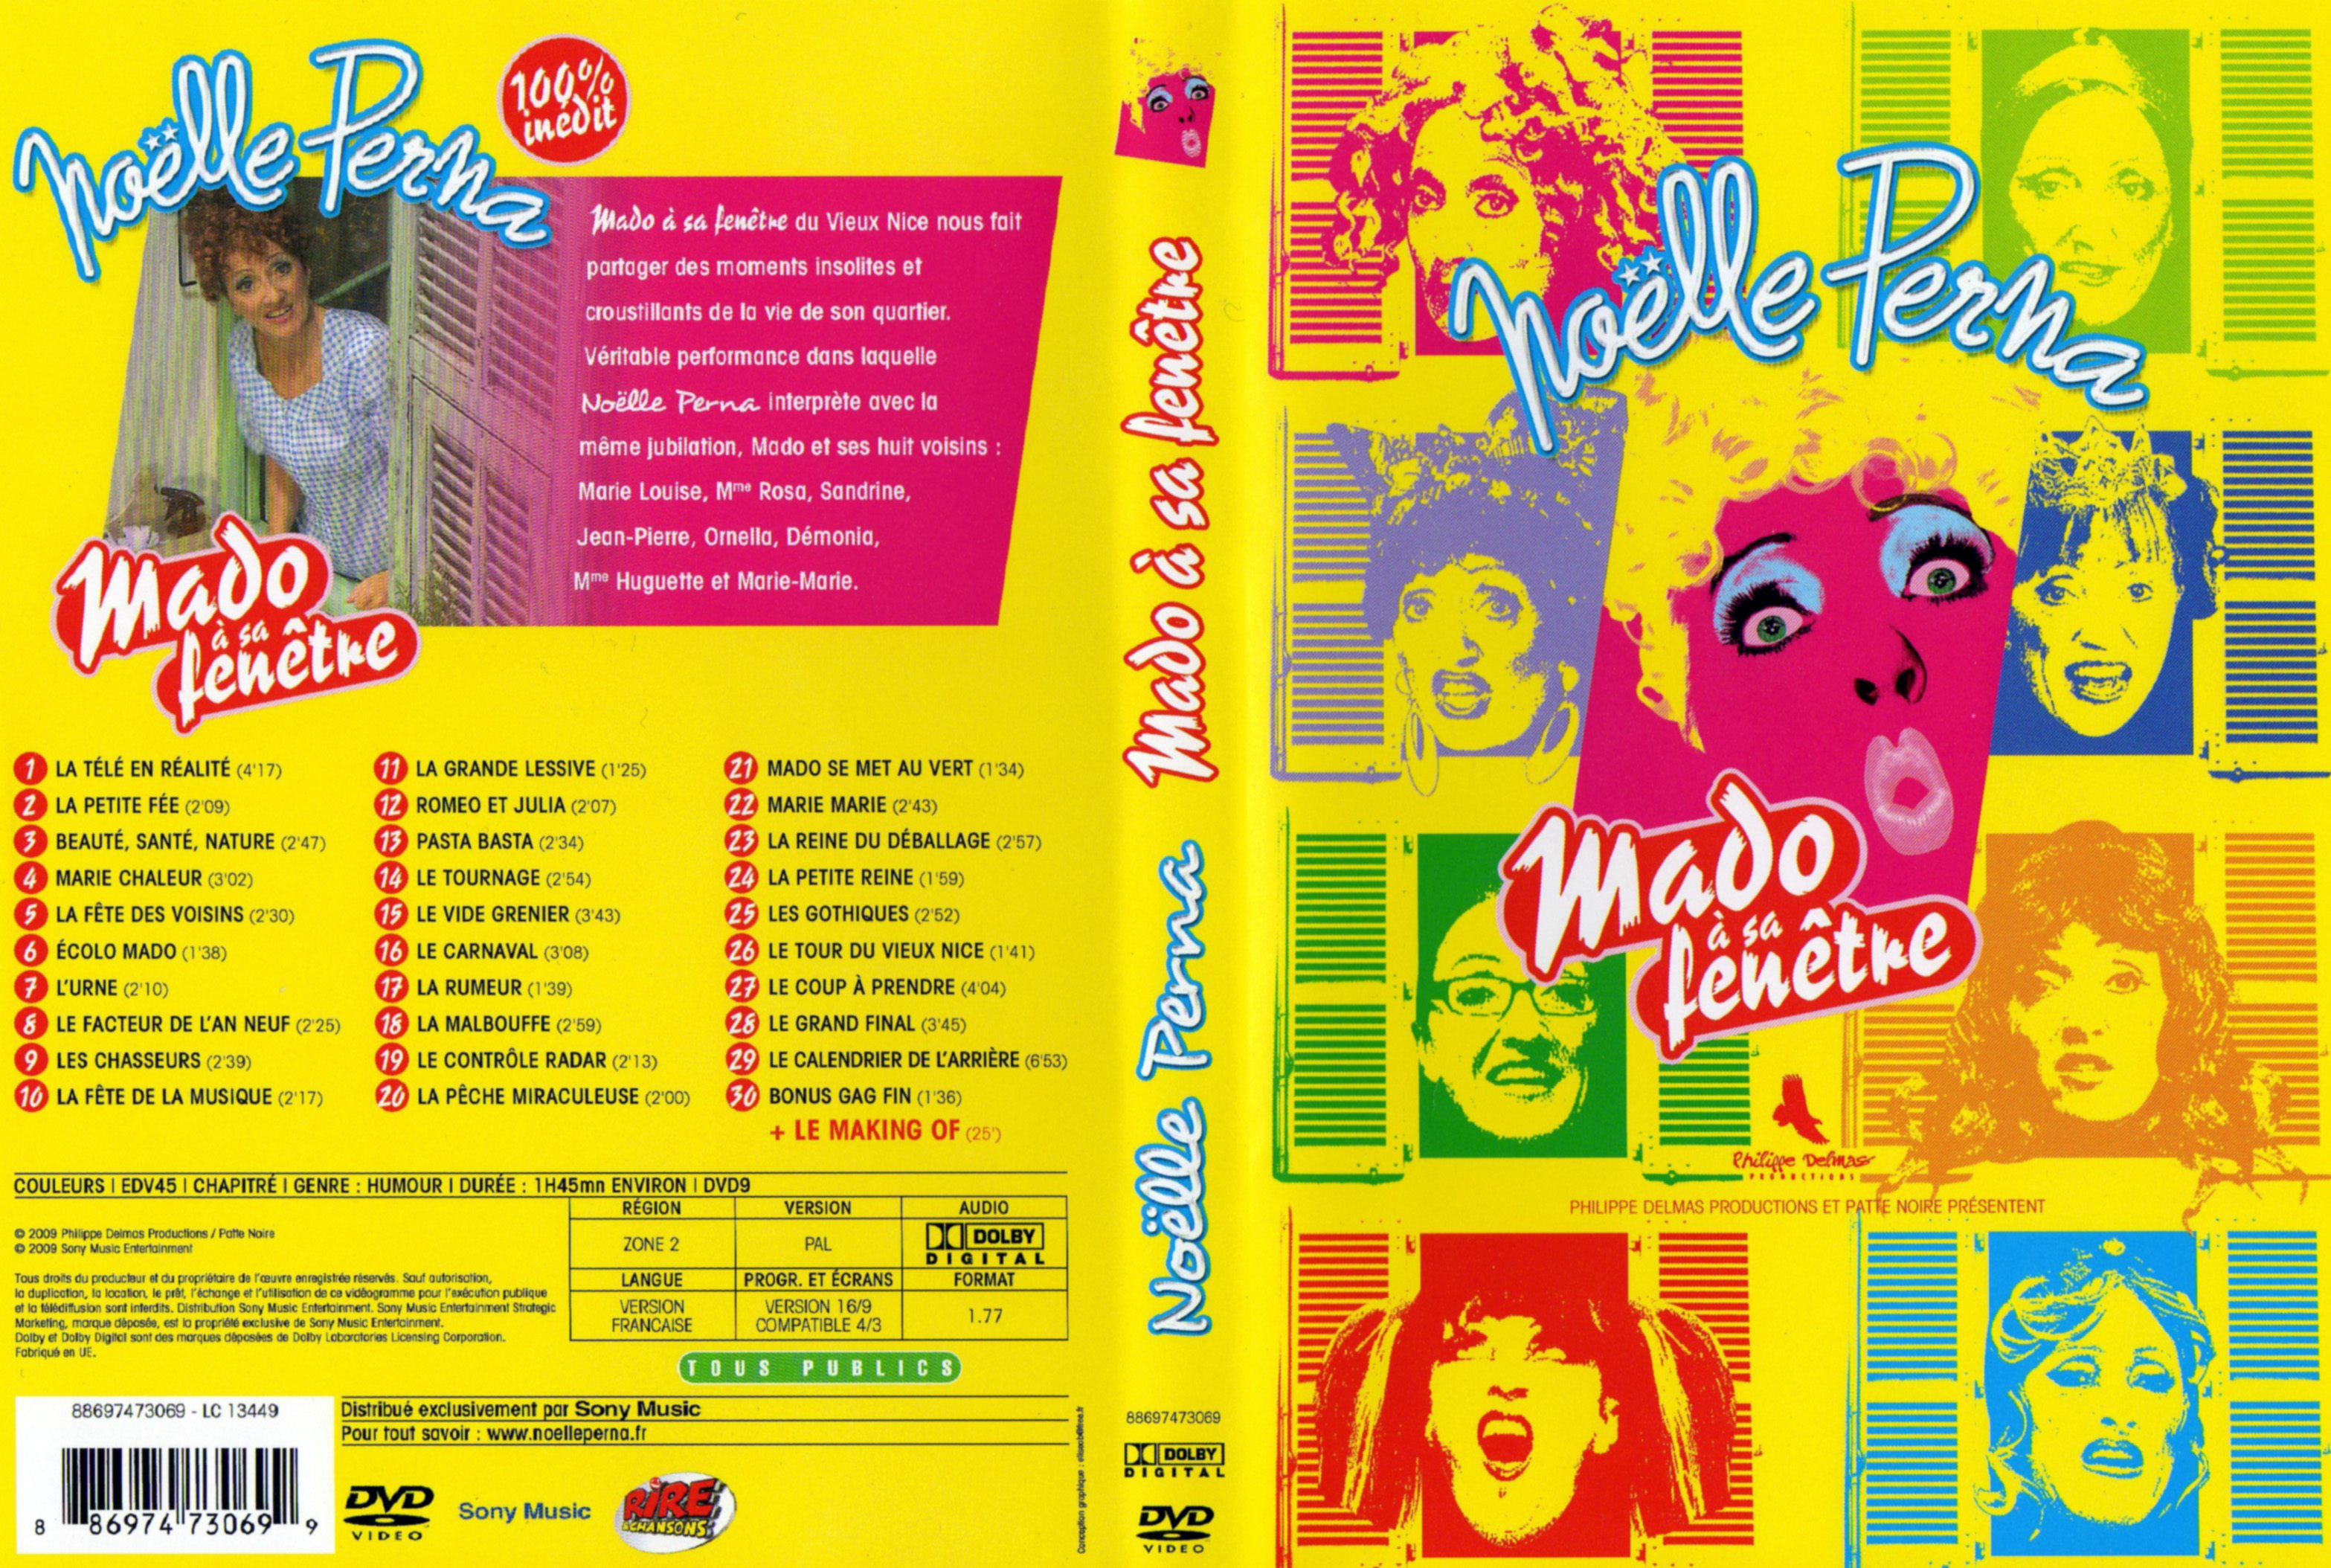 Jaquette DVD Noelle Perna - Mado  sa fenetre 